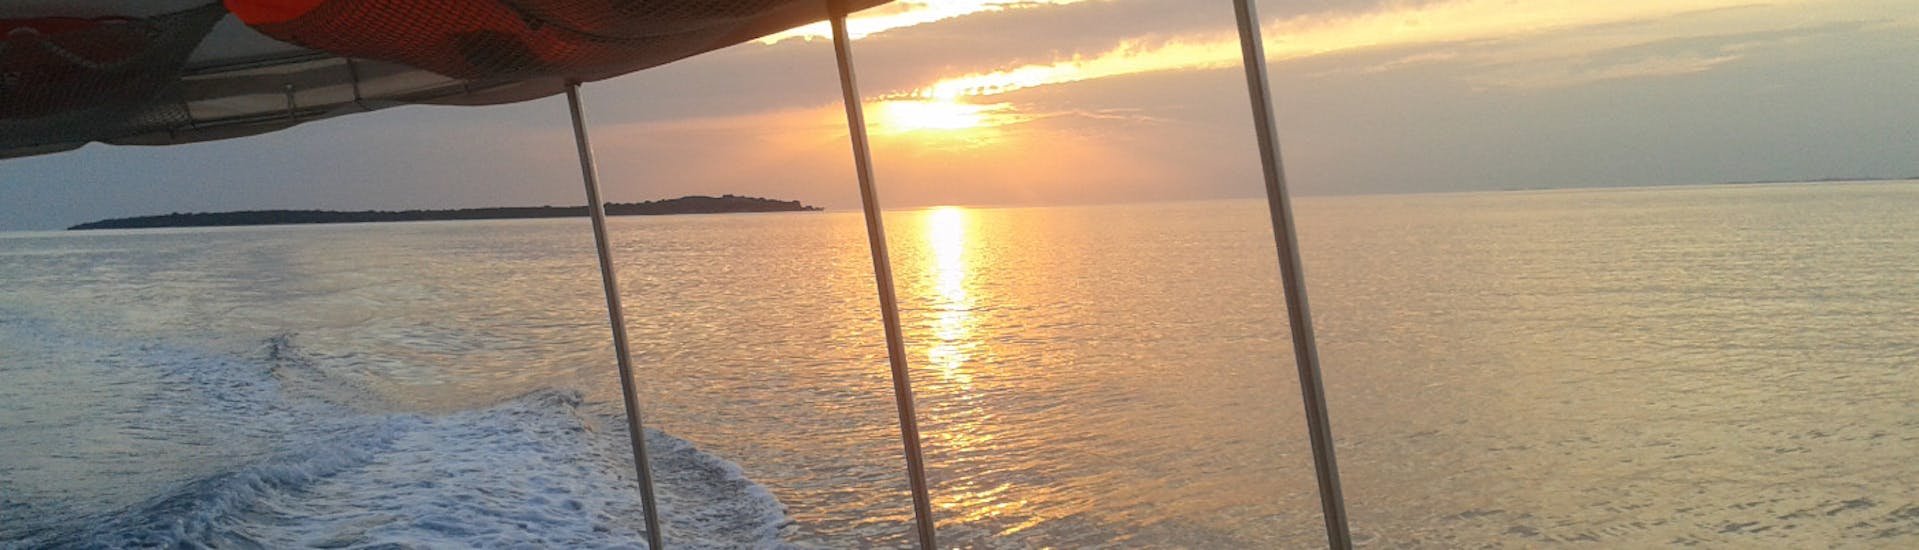 Sonnenuntergang während der private Bootstour zum Brijuni Nationalpark bei Sonnenuntergang mit Delphinbeobachtung.